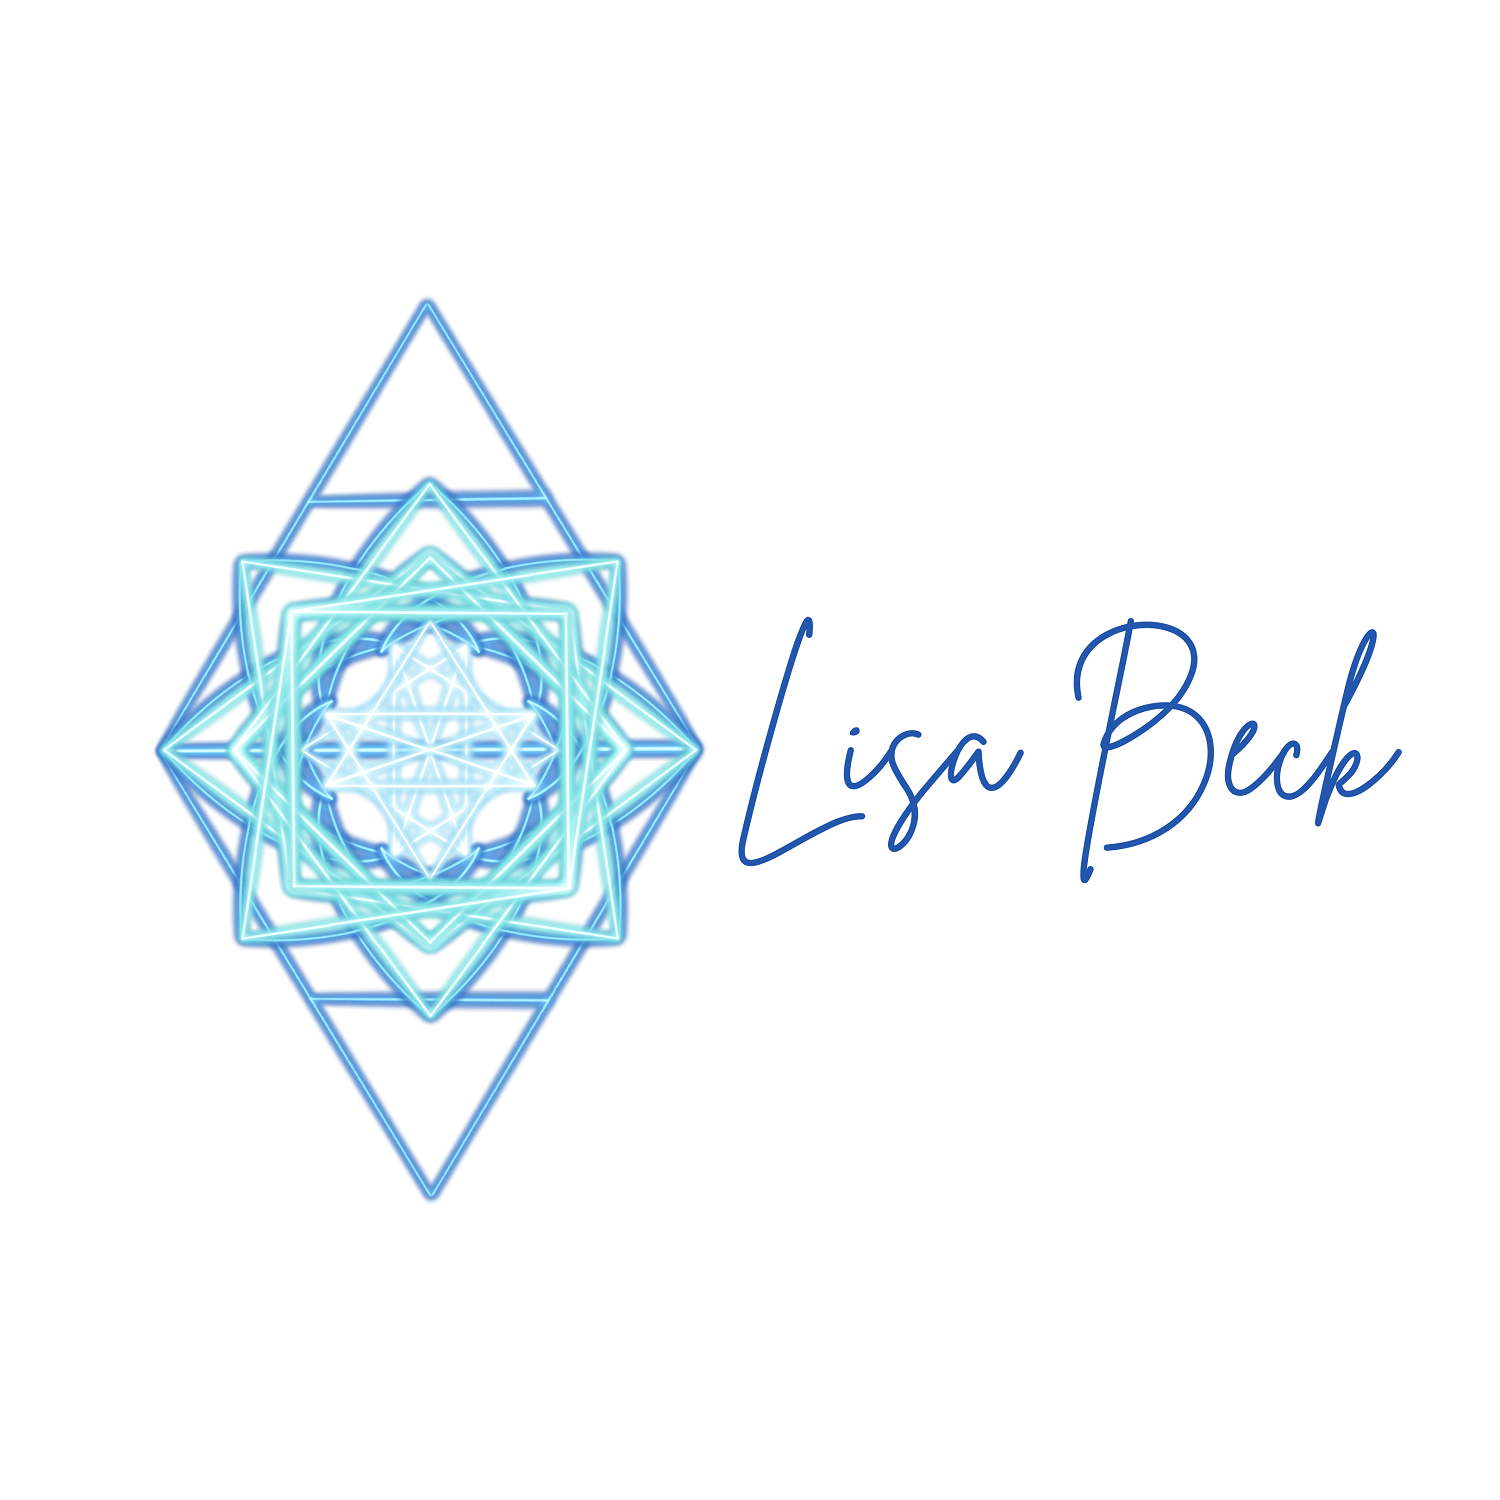 Logo zwei übereinander liegende Dreiecke und Mandala in der Mitte mit Namen Lisa Beck